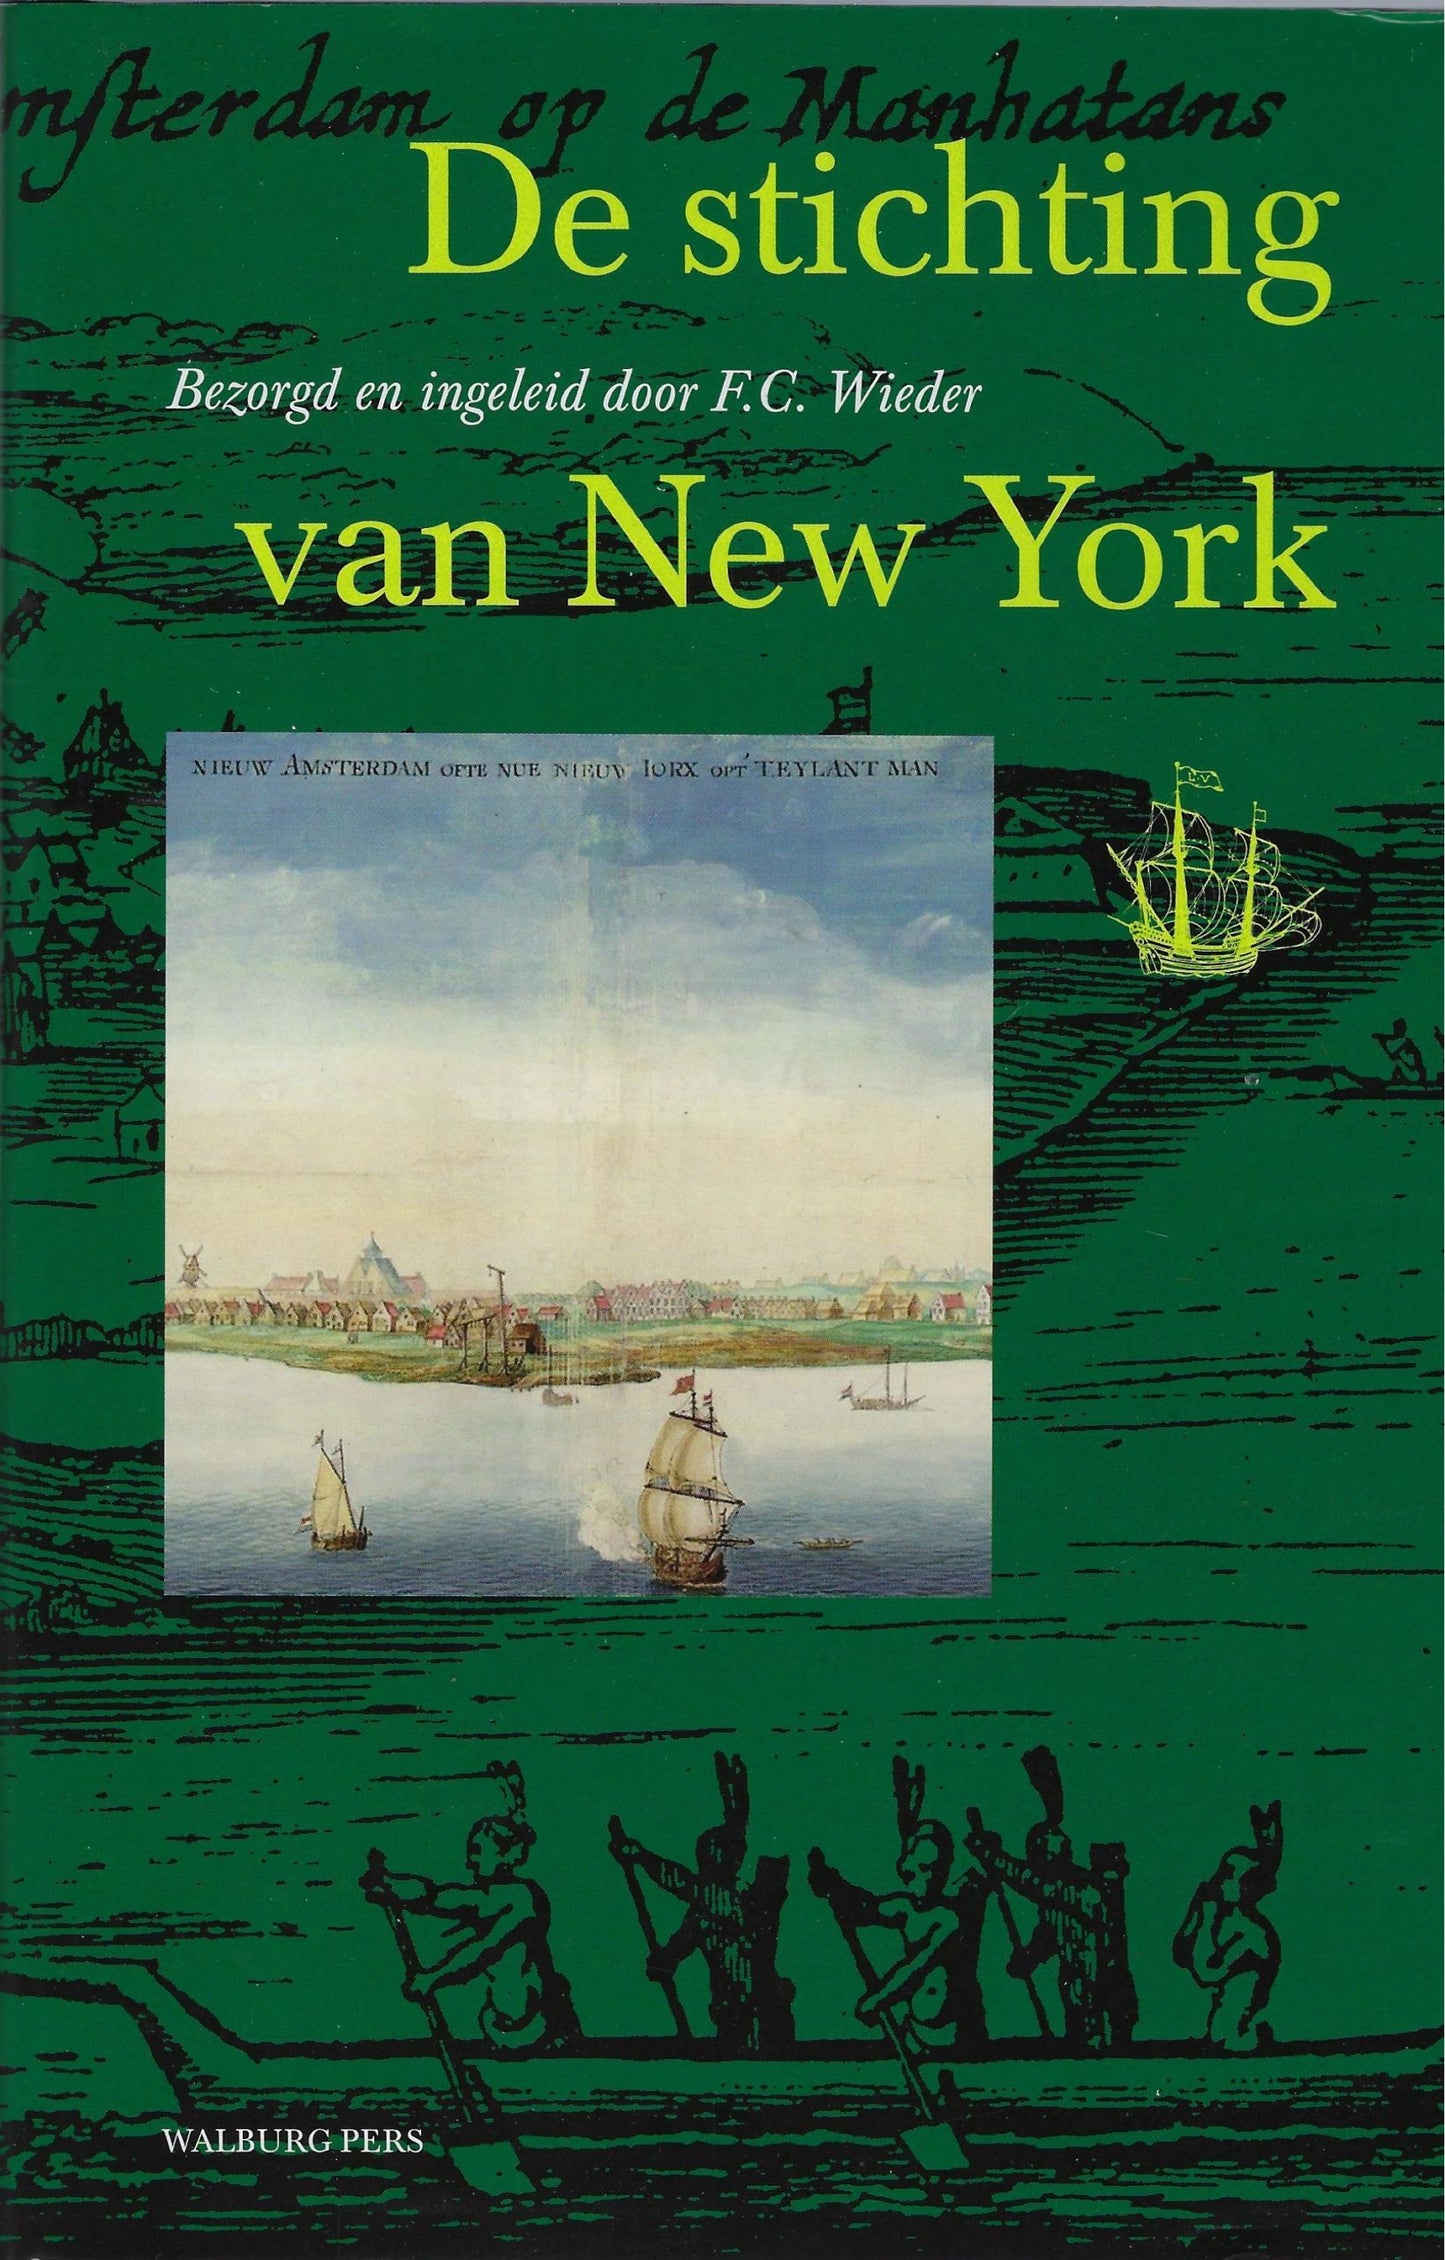 De stichting van New York in juli 1625